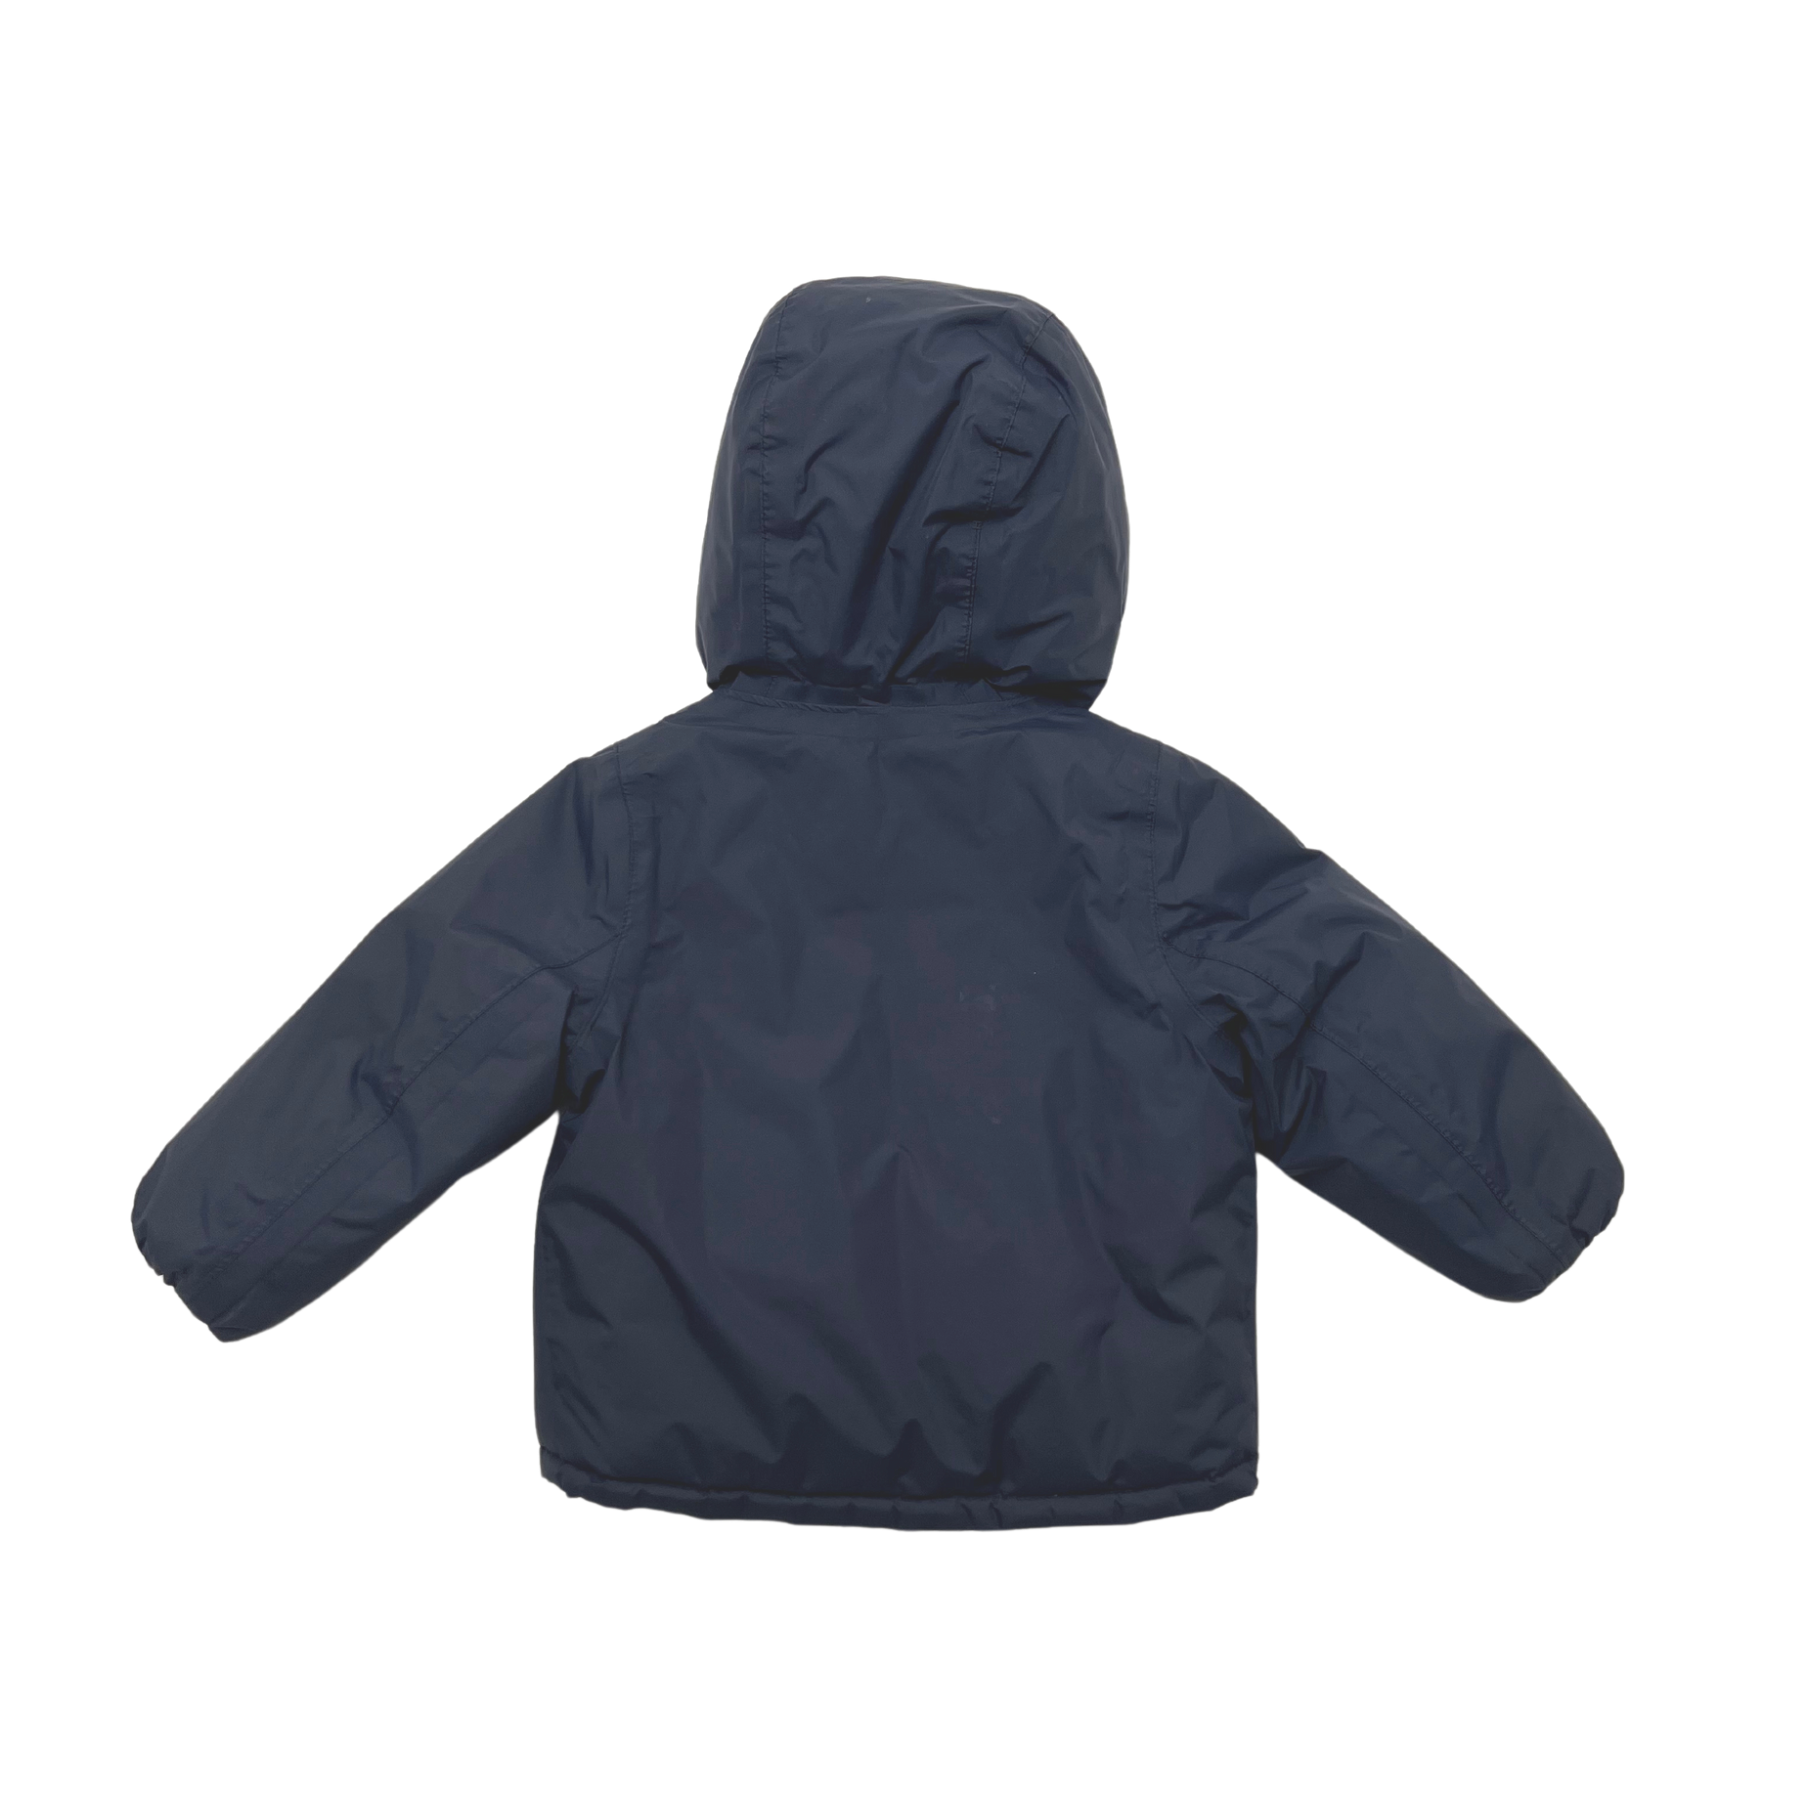 KWAY - Waterproof jacket - 1 year